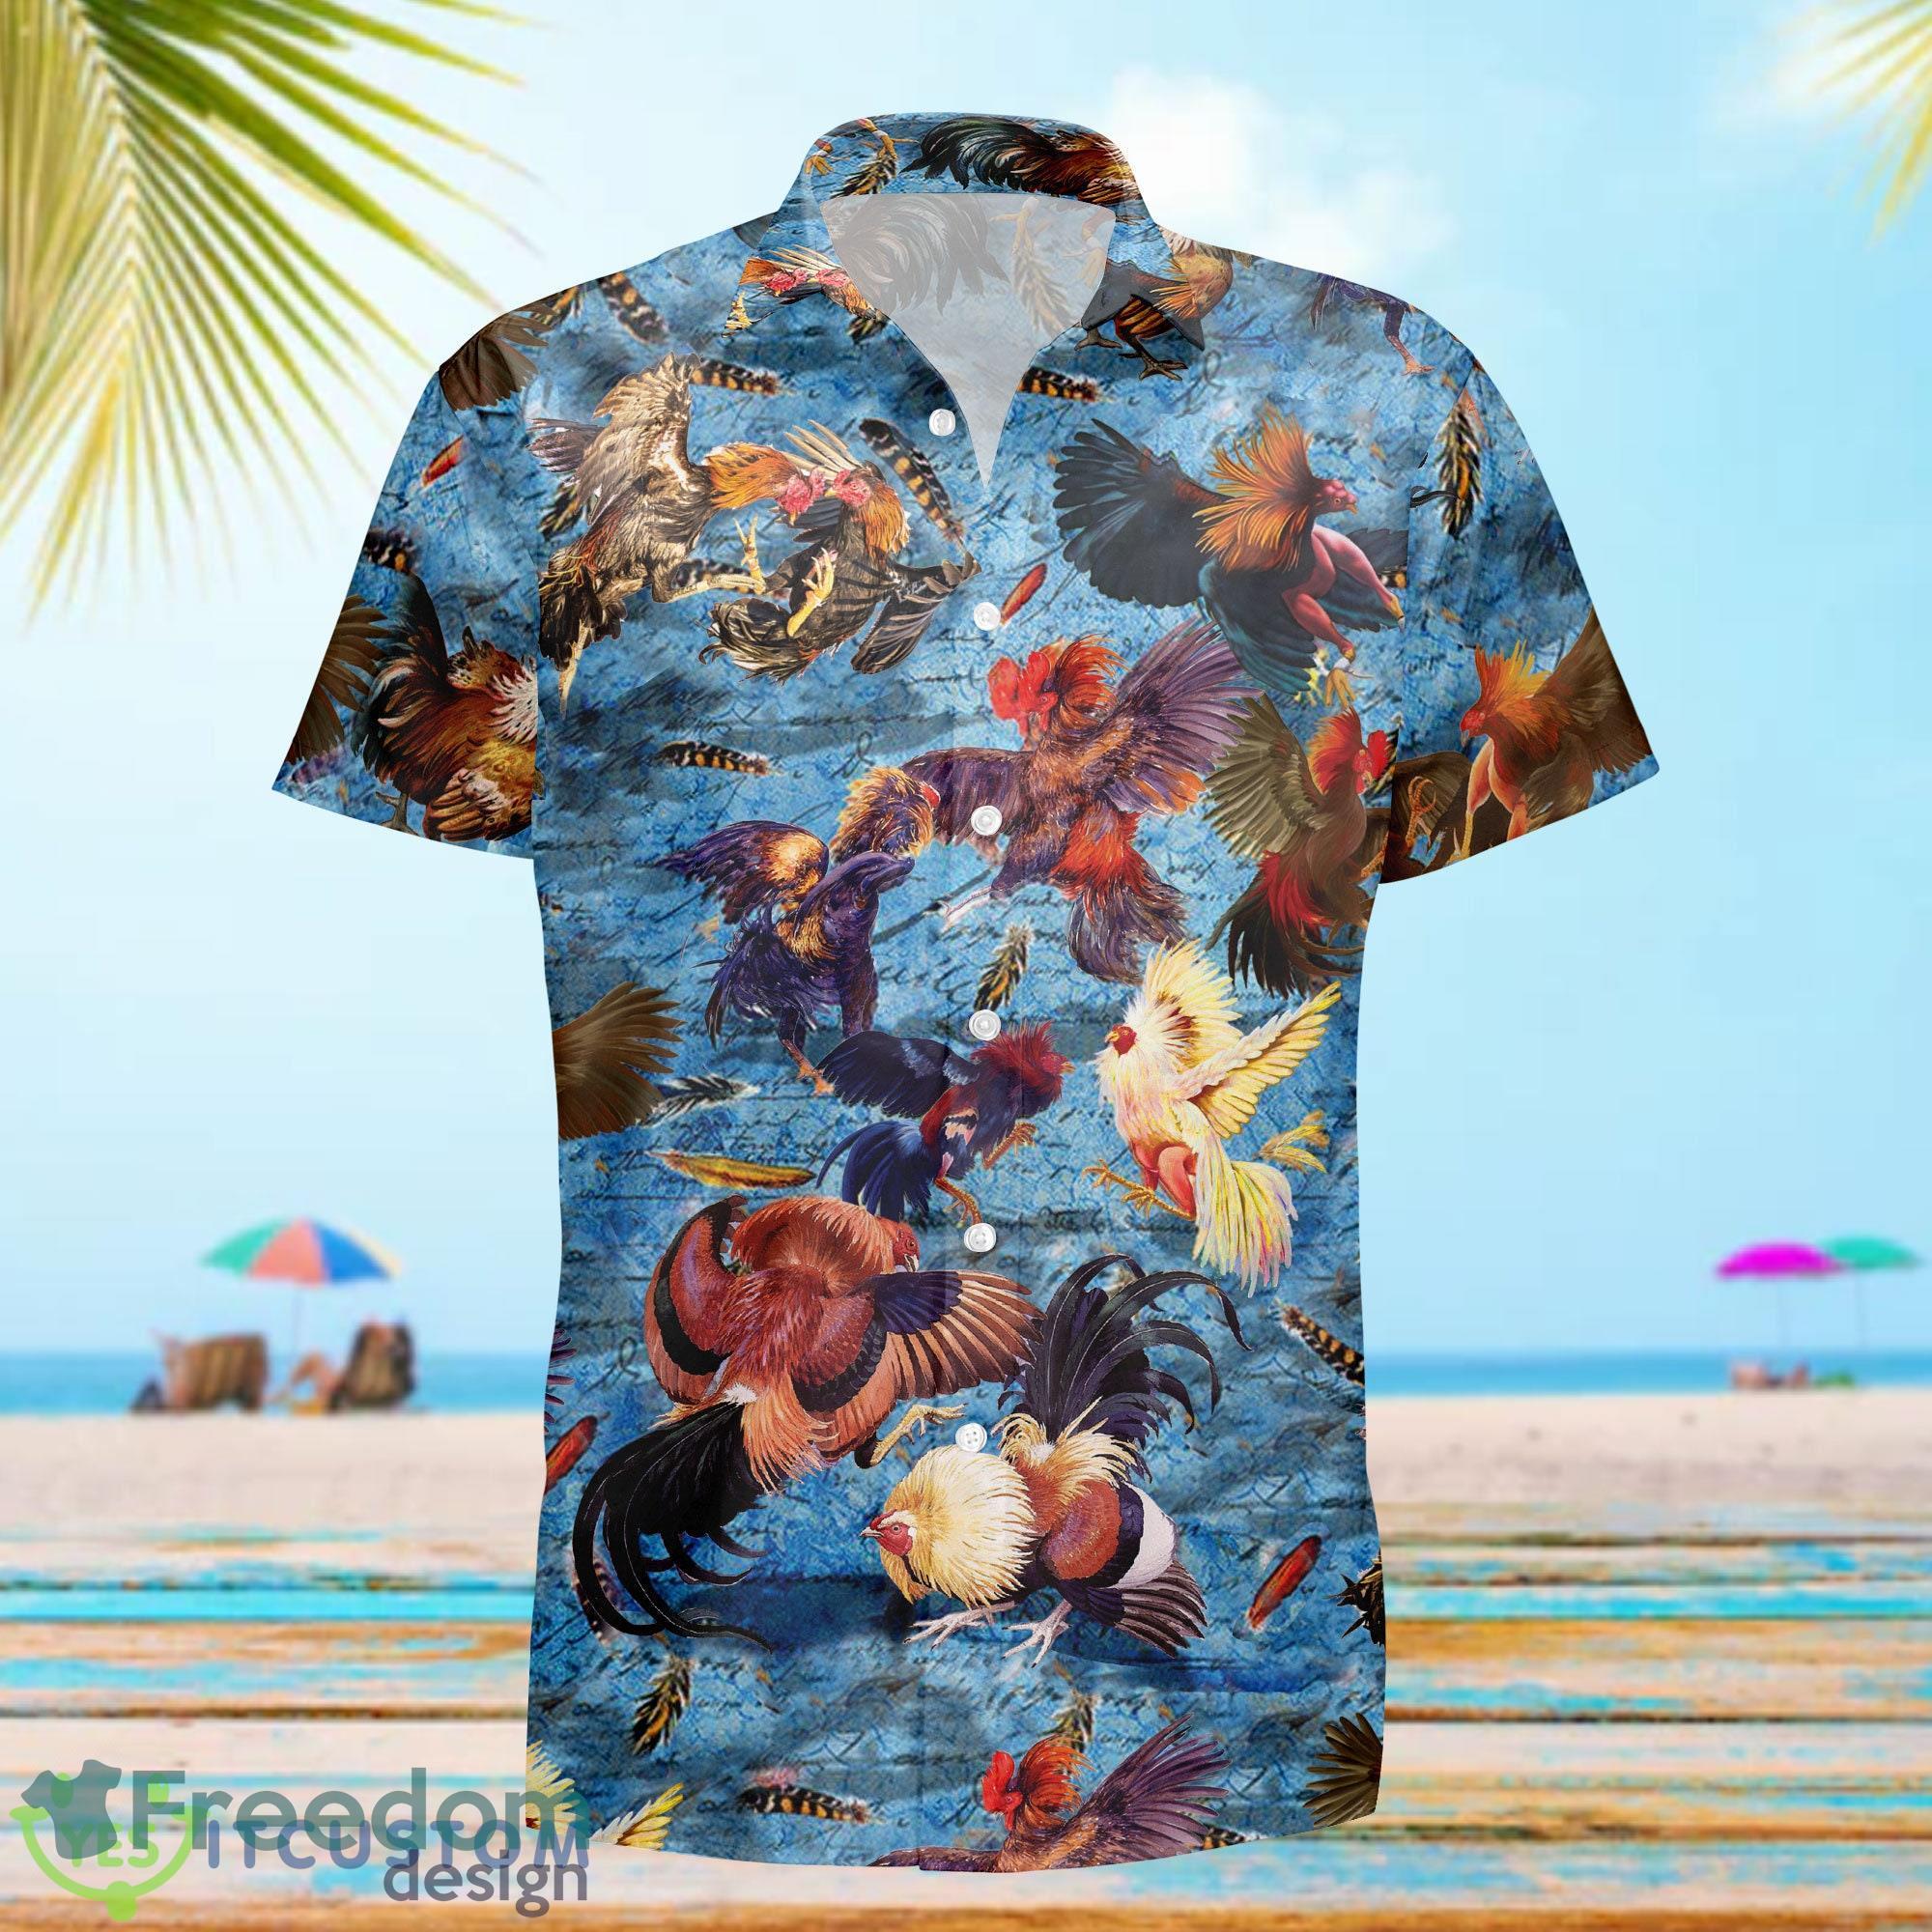 Atlanta Braves MLB Hawaiian Shirt For Men Women Trending For This Summer -  Freedomdesign